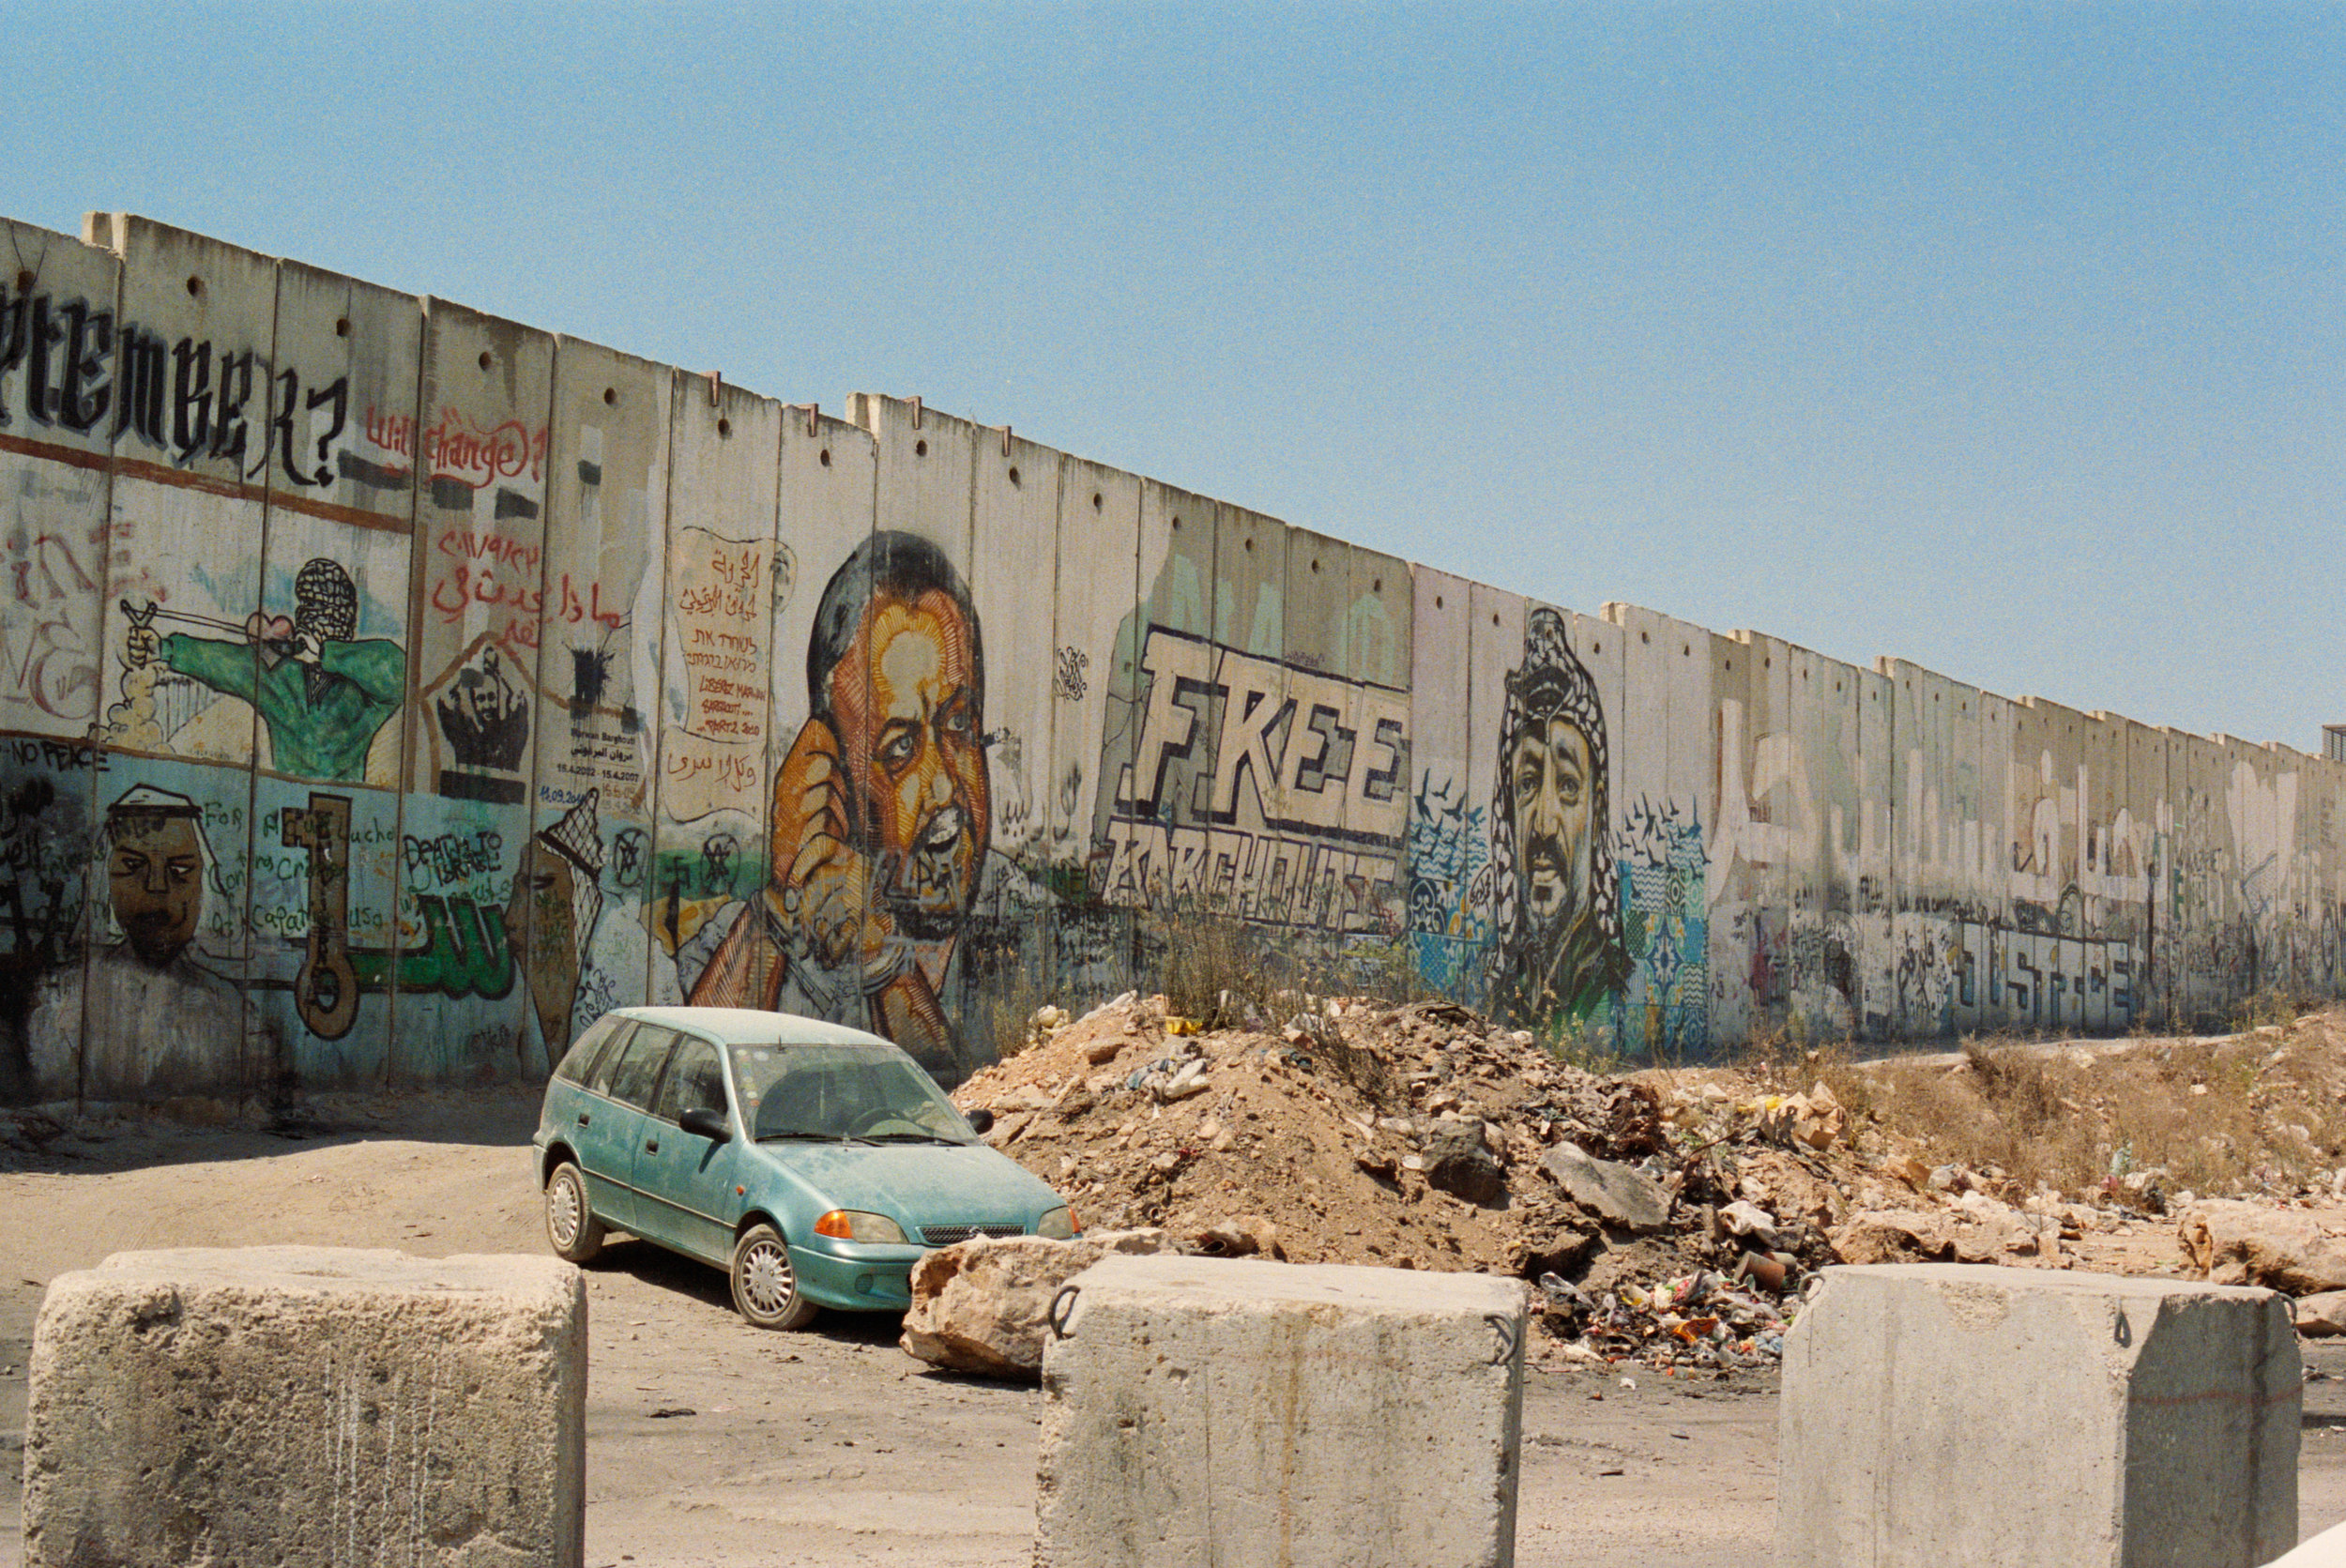 West Bank Wall at Qalandiya Checkpoint, 2018